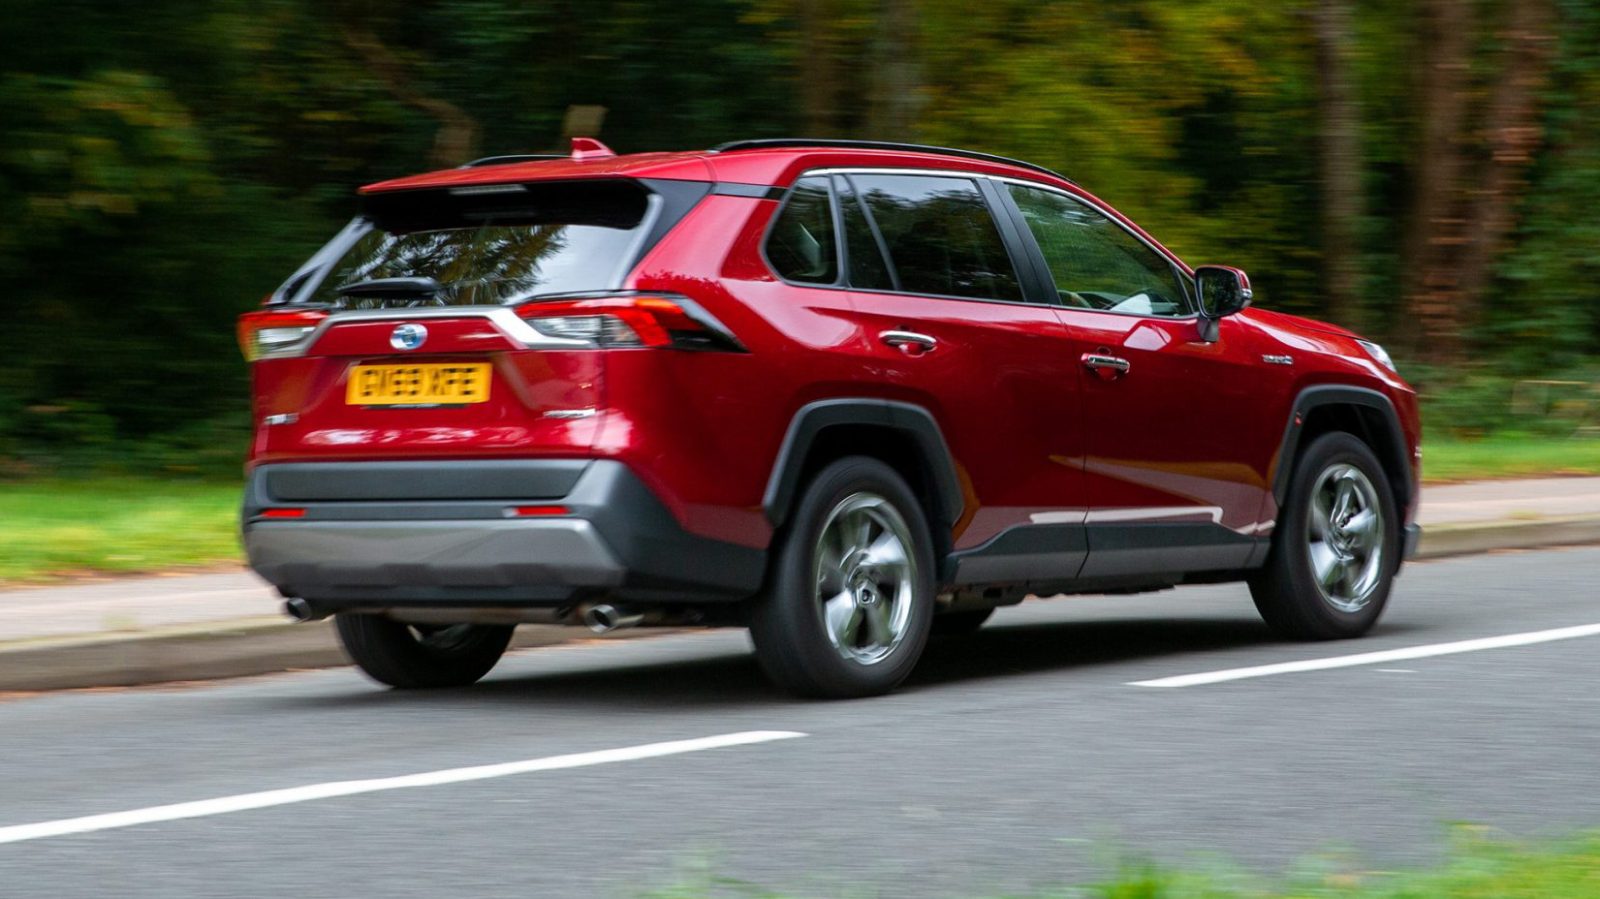 RAV4 Hybrid fuel economy praised by What Car? Toyota UK Magazine